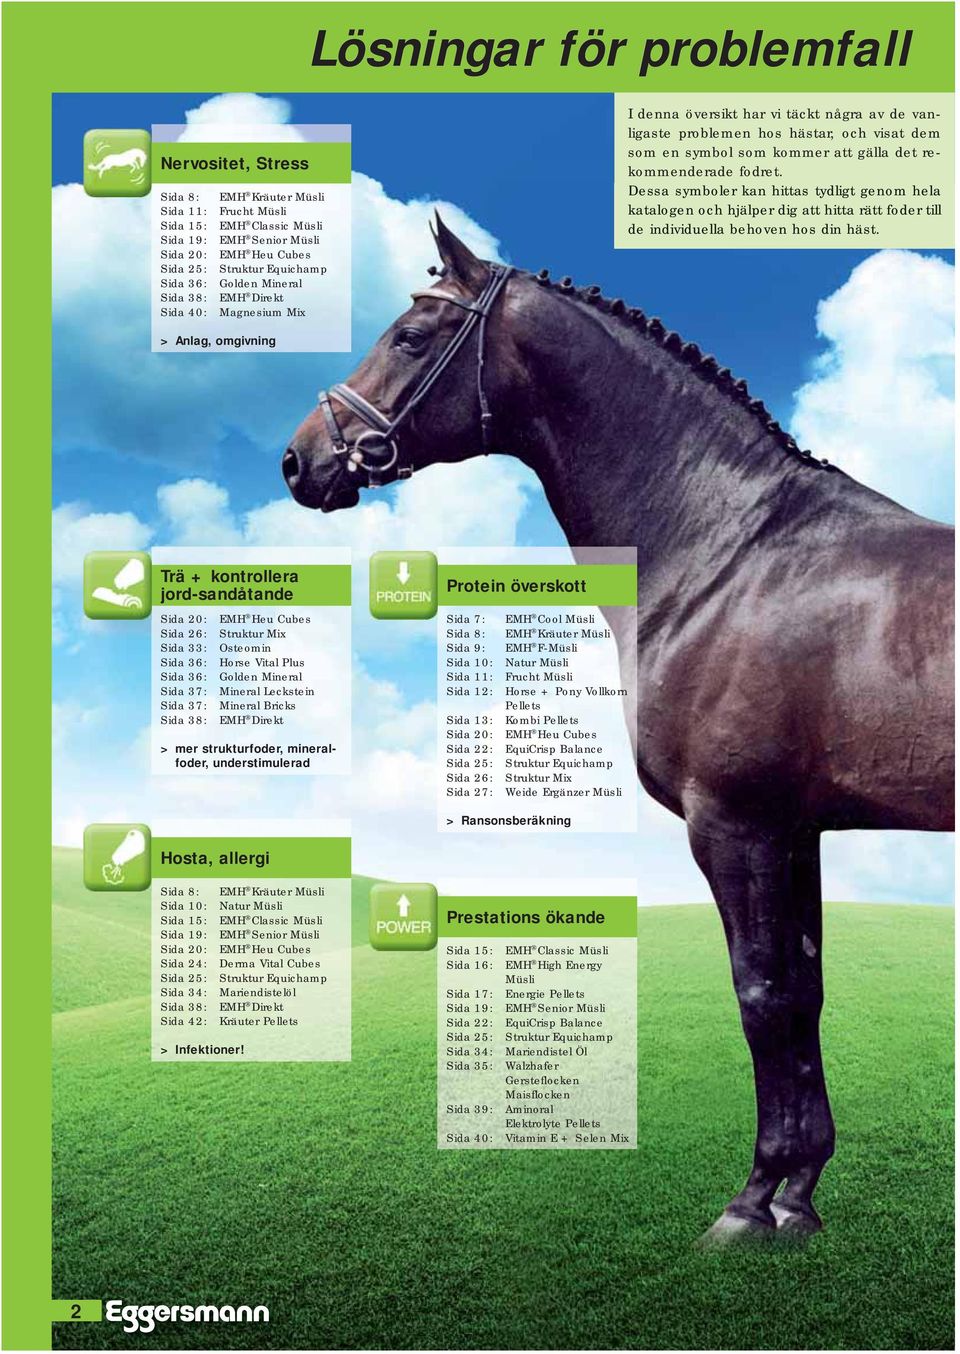 rekommenderade fodret. Dessa symboler kan hittas tydligt genom hela katalogen och hjälper dig att hitta rätt foder till de individuella behoven hos din häst.